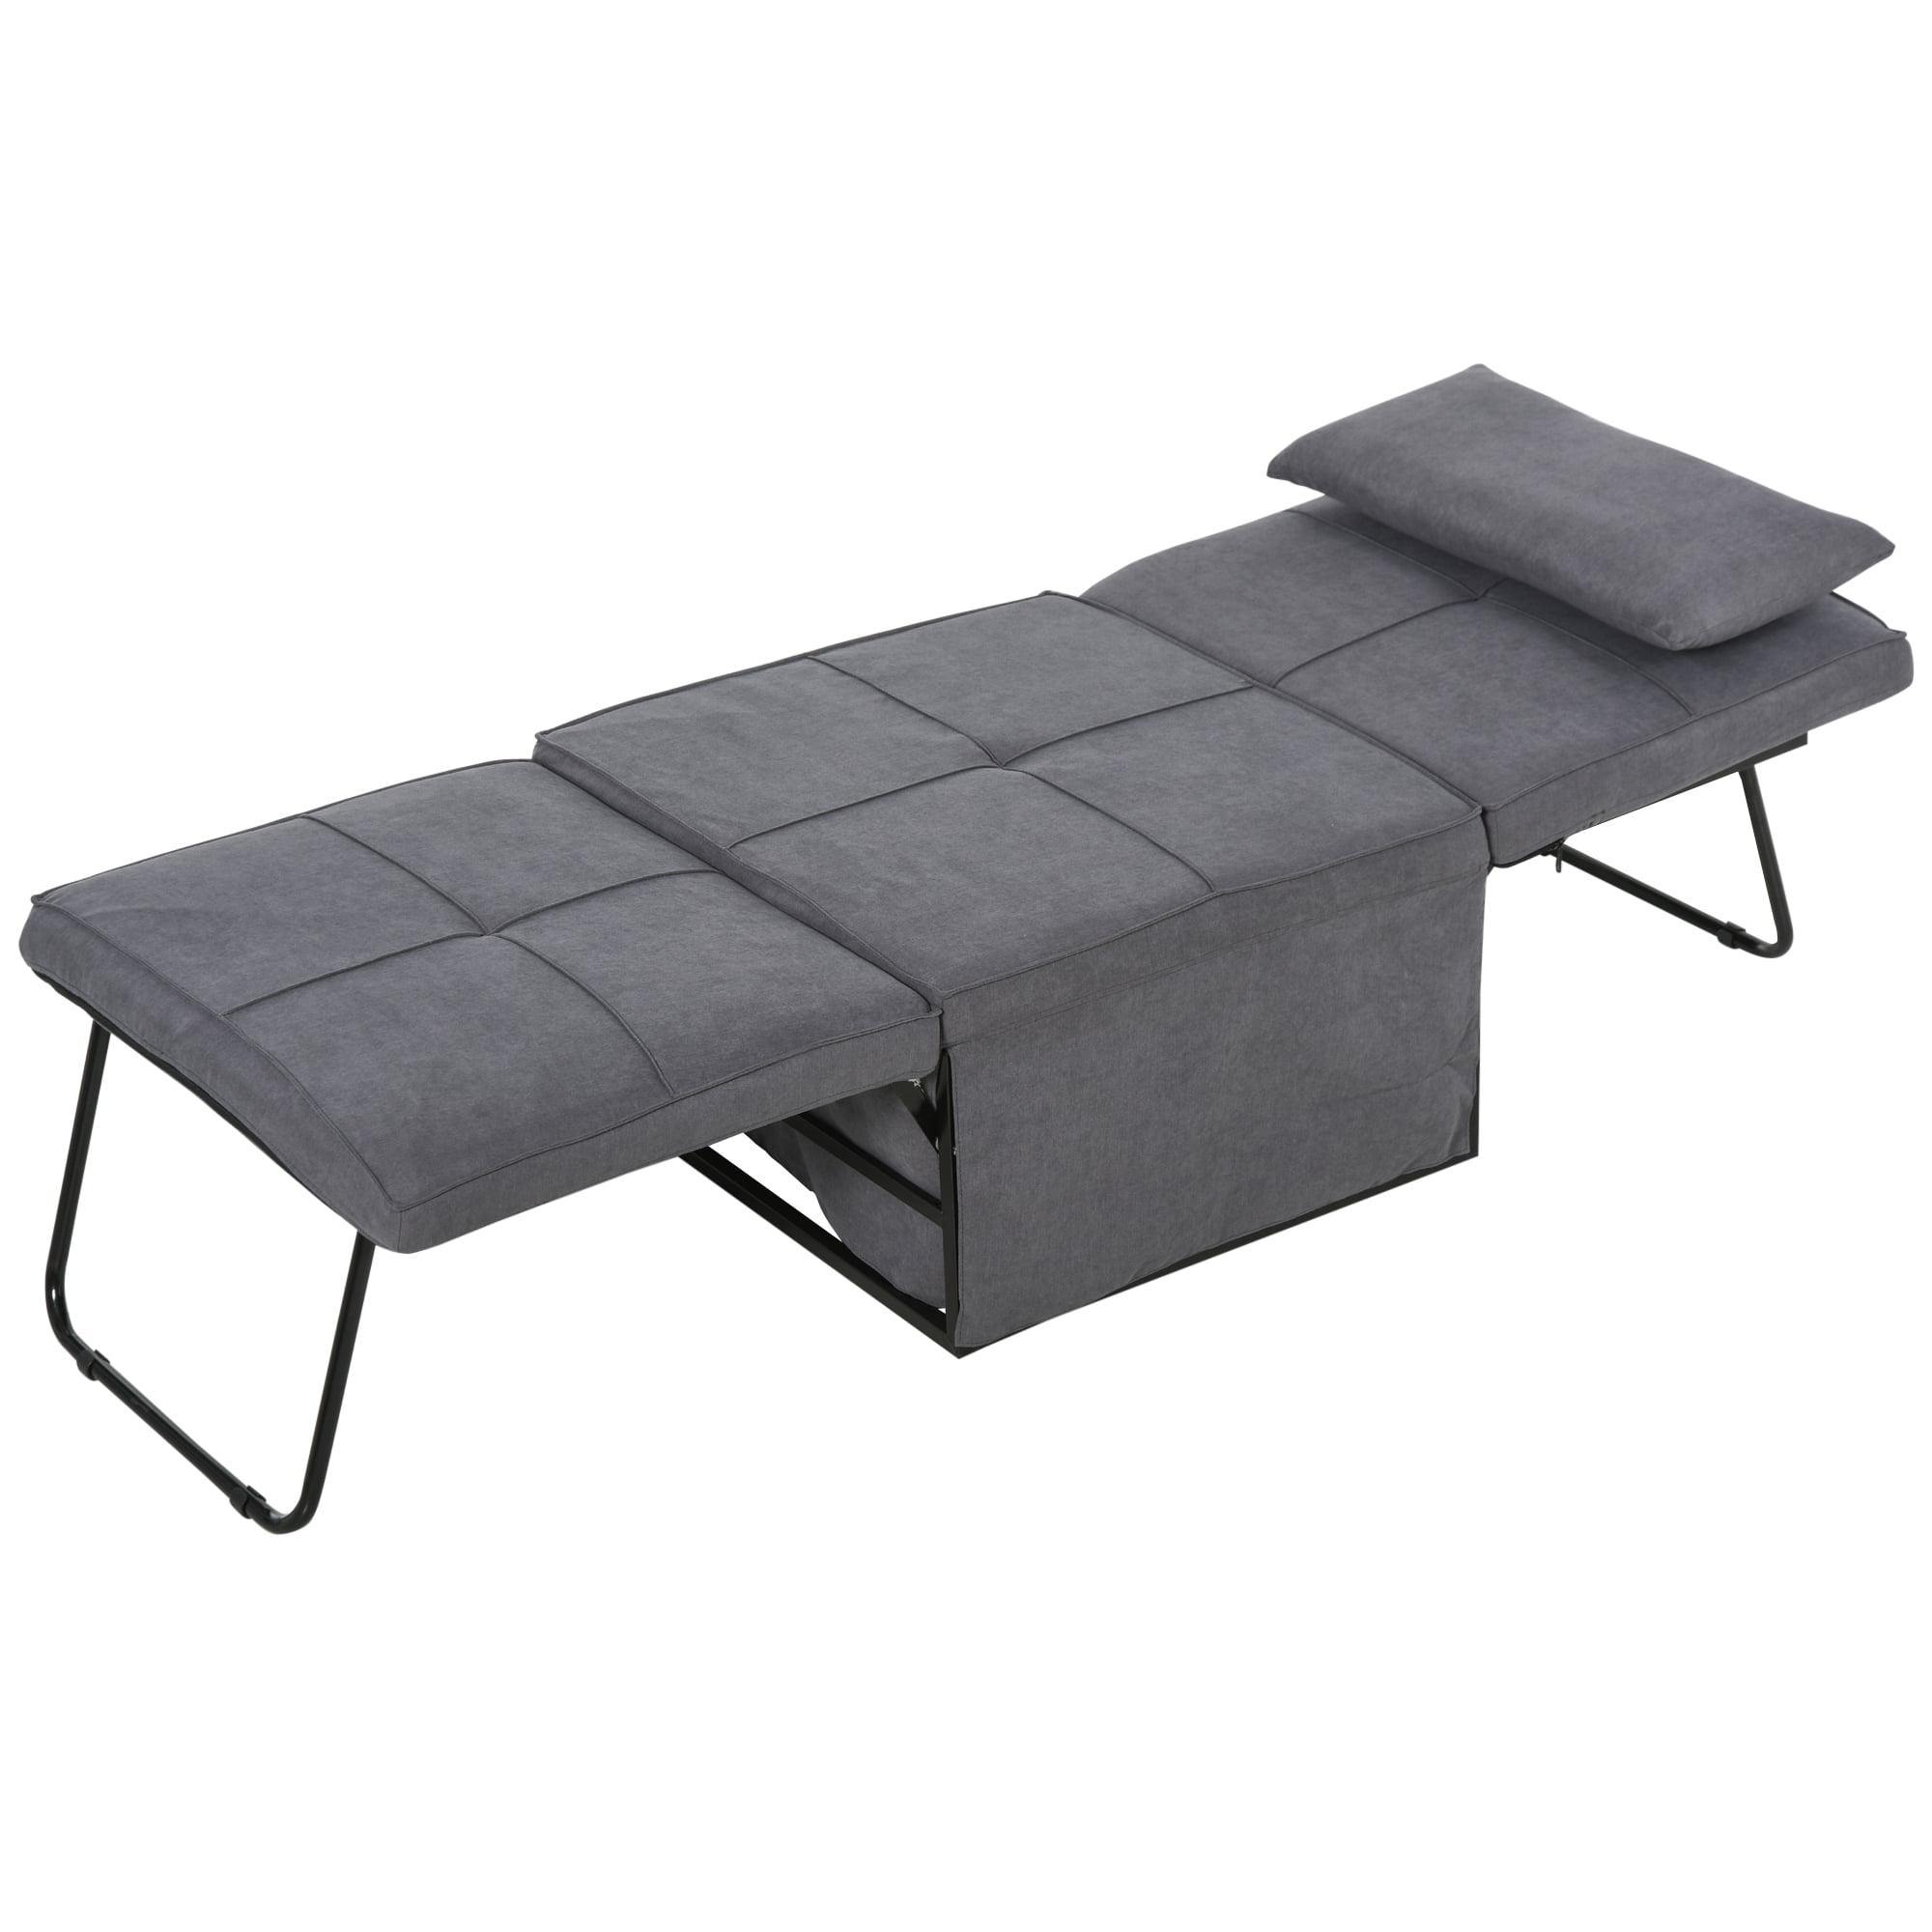 4 in 1 Multi Function Sofa Bed Adjustable Backrest